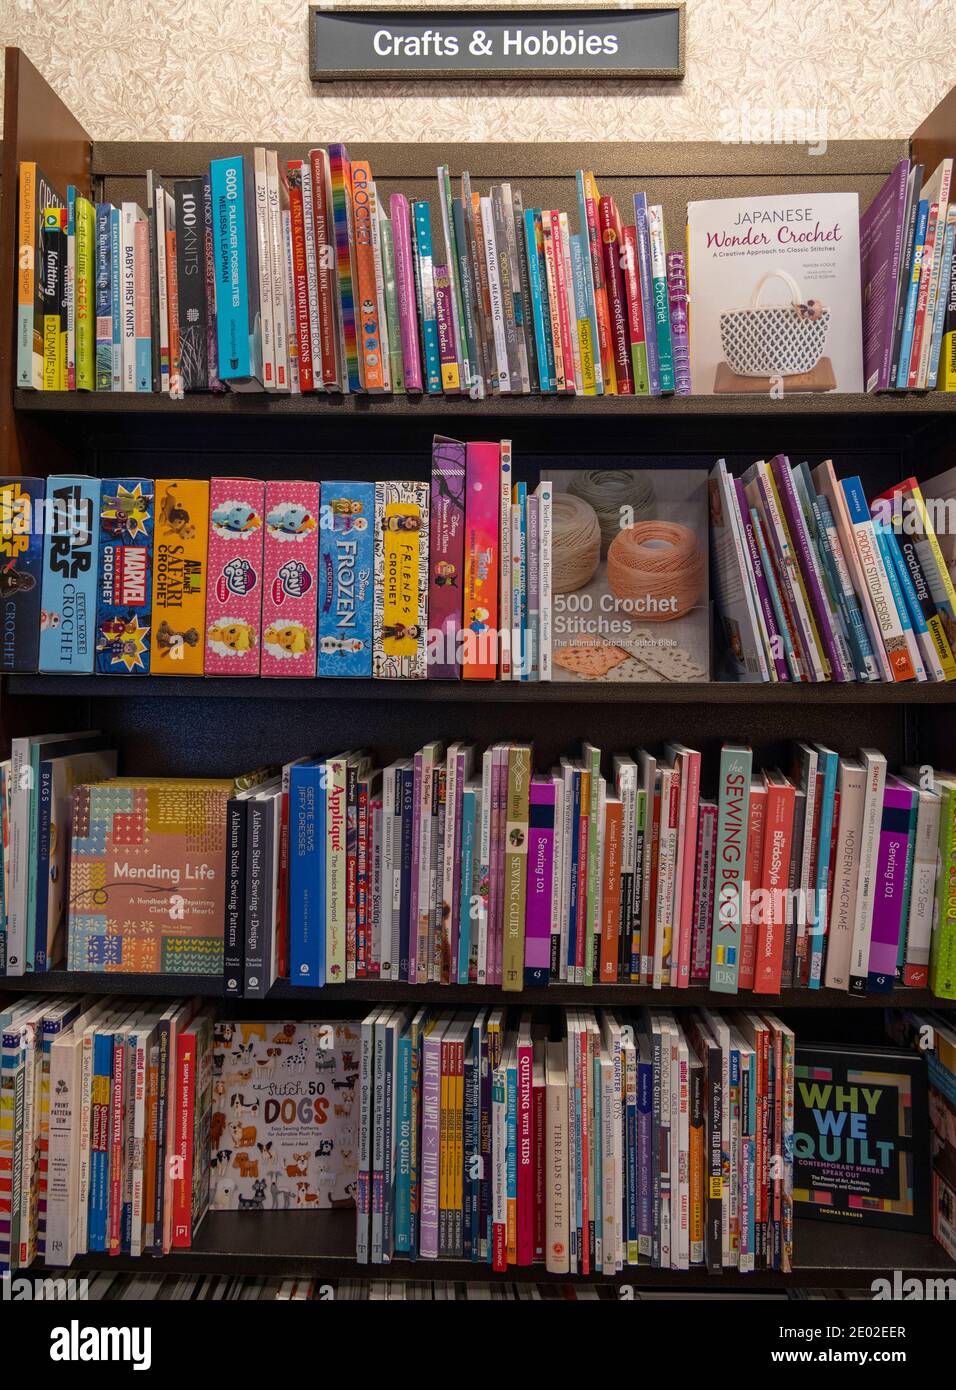 Bastelbücher und Hobbys in Regalen, Barnes and Noble, USA Stockfoto